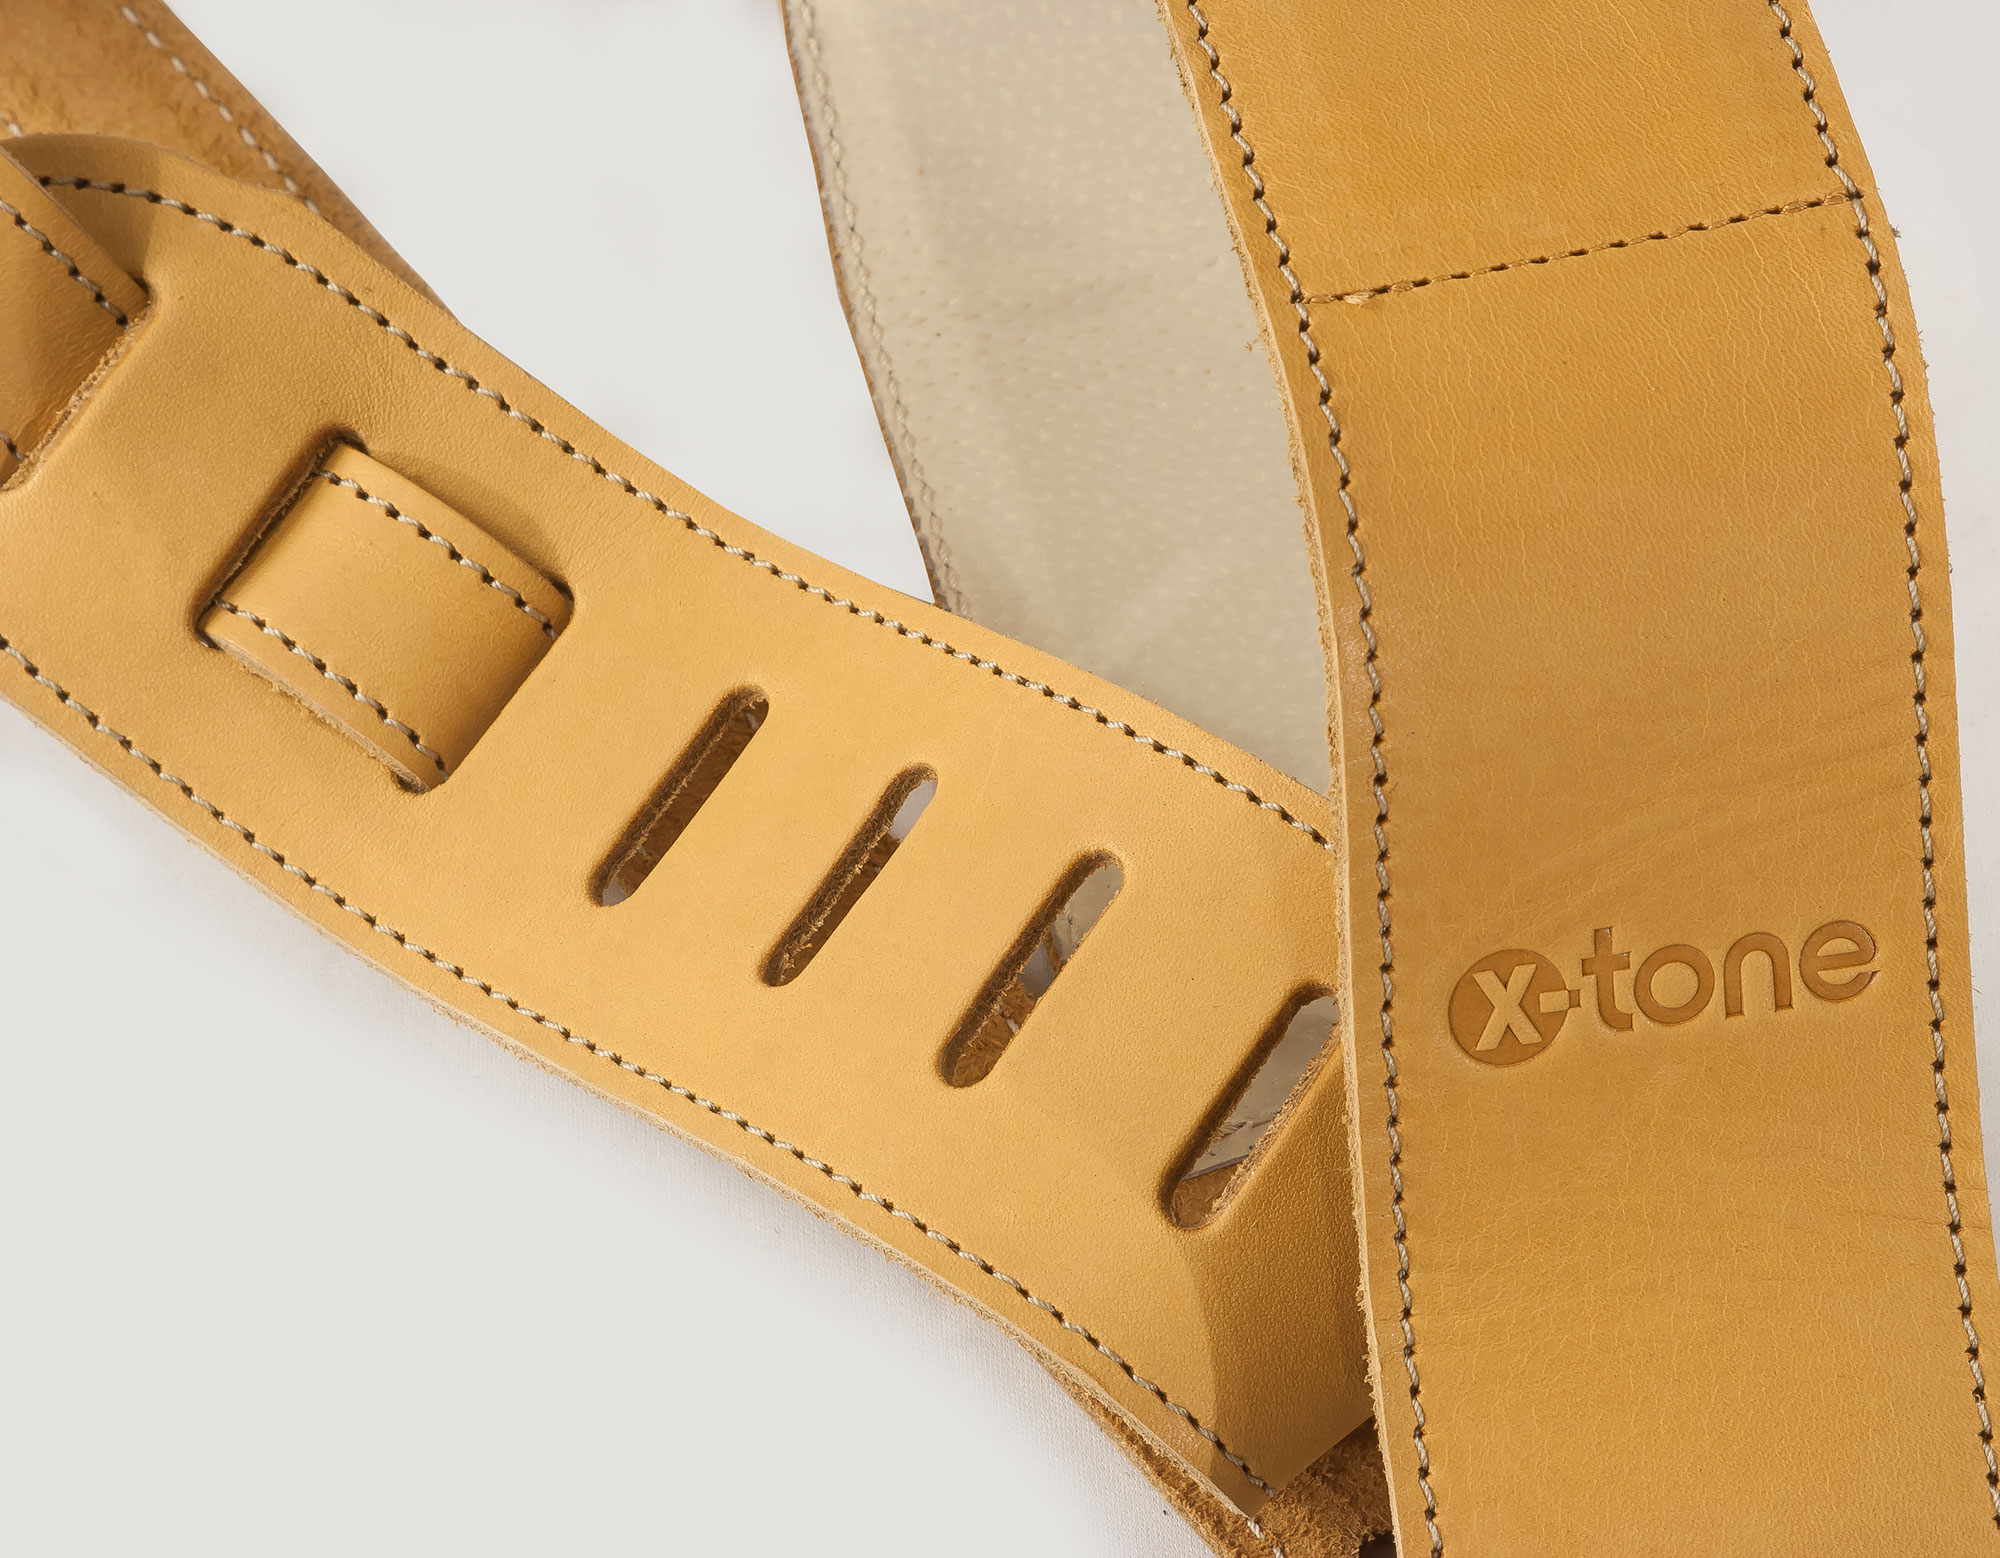 X-tone Xg 3154 Classic Plus Leather Guitar Strap Cuir RembourrÉe Brownstone Beige - Gitarrengurt - Variation 1